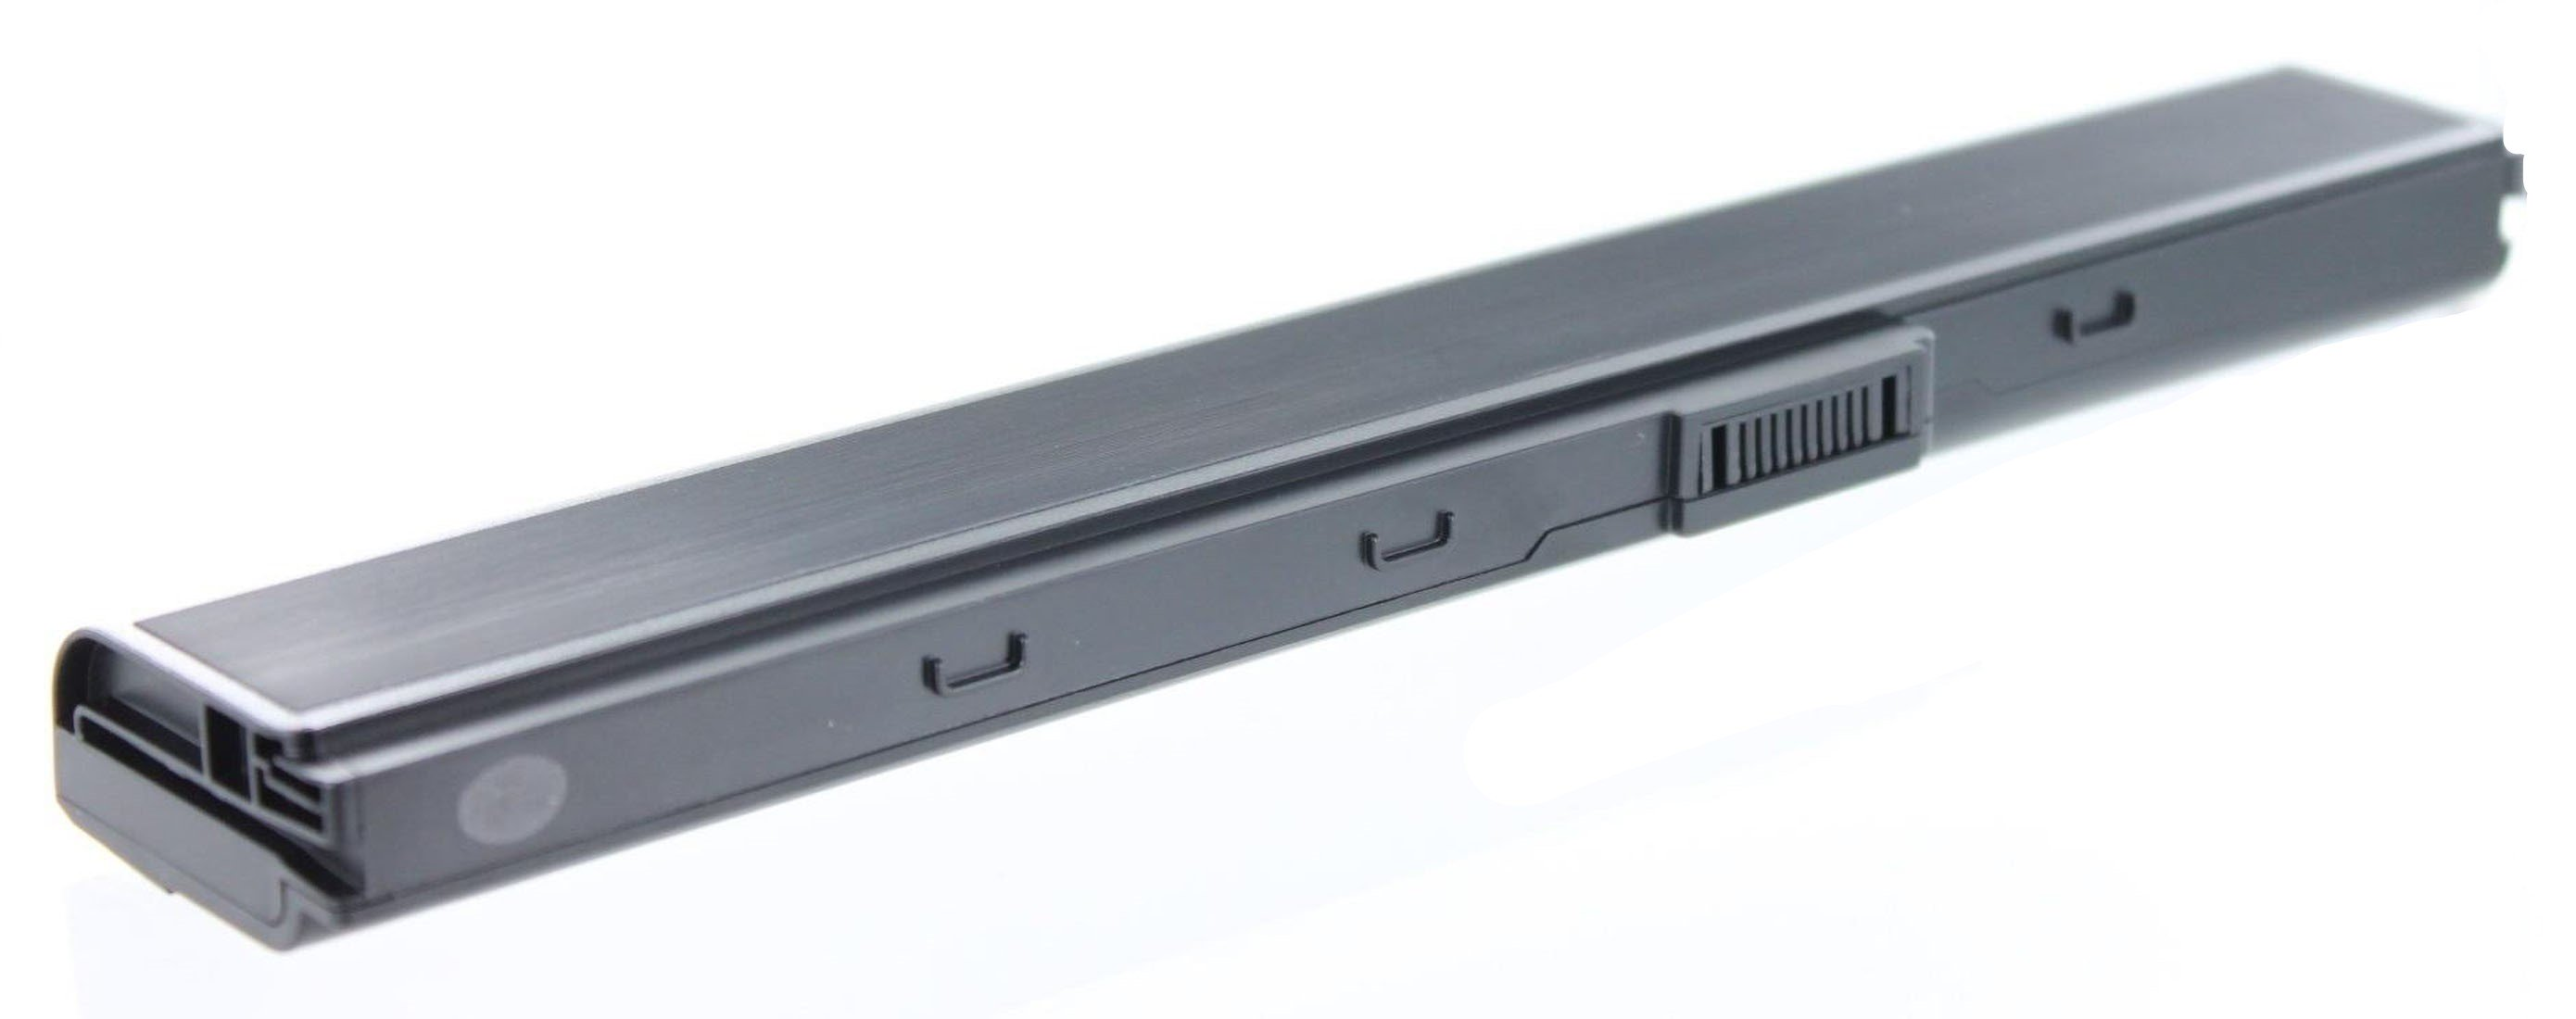 AGI 4400 Volt, Akku mAh Notebookakku, 52JU-SX116V Asus kompatibel Pro 10.8 mit Li-Ion